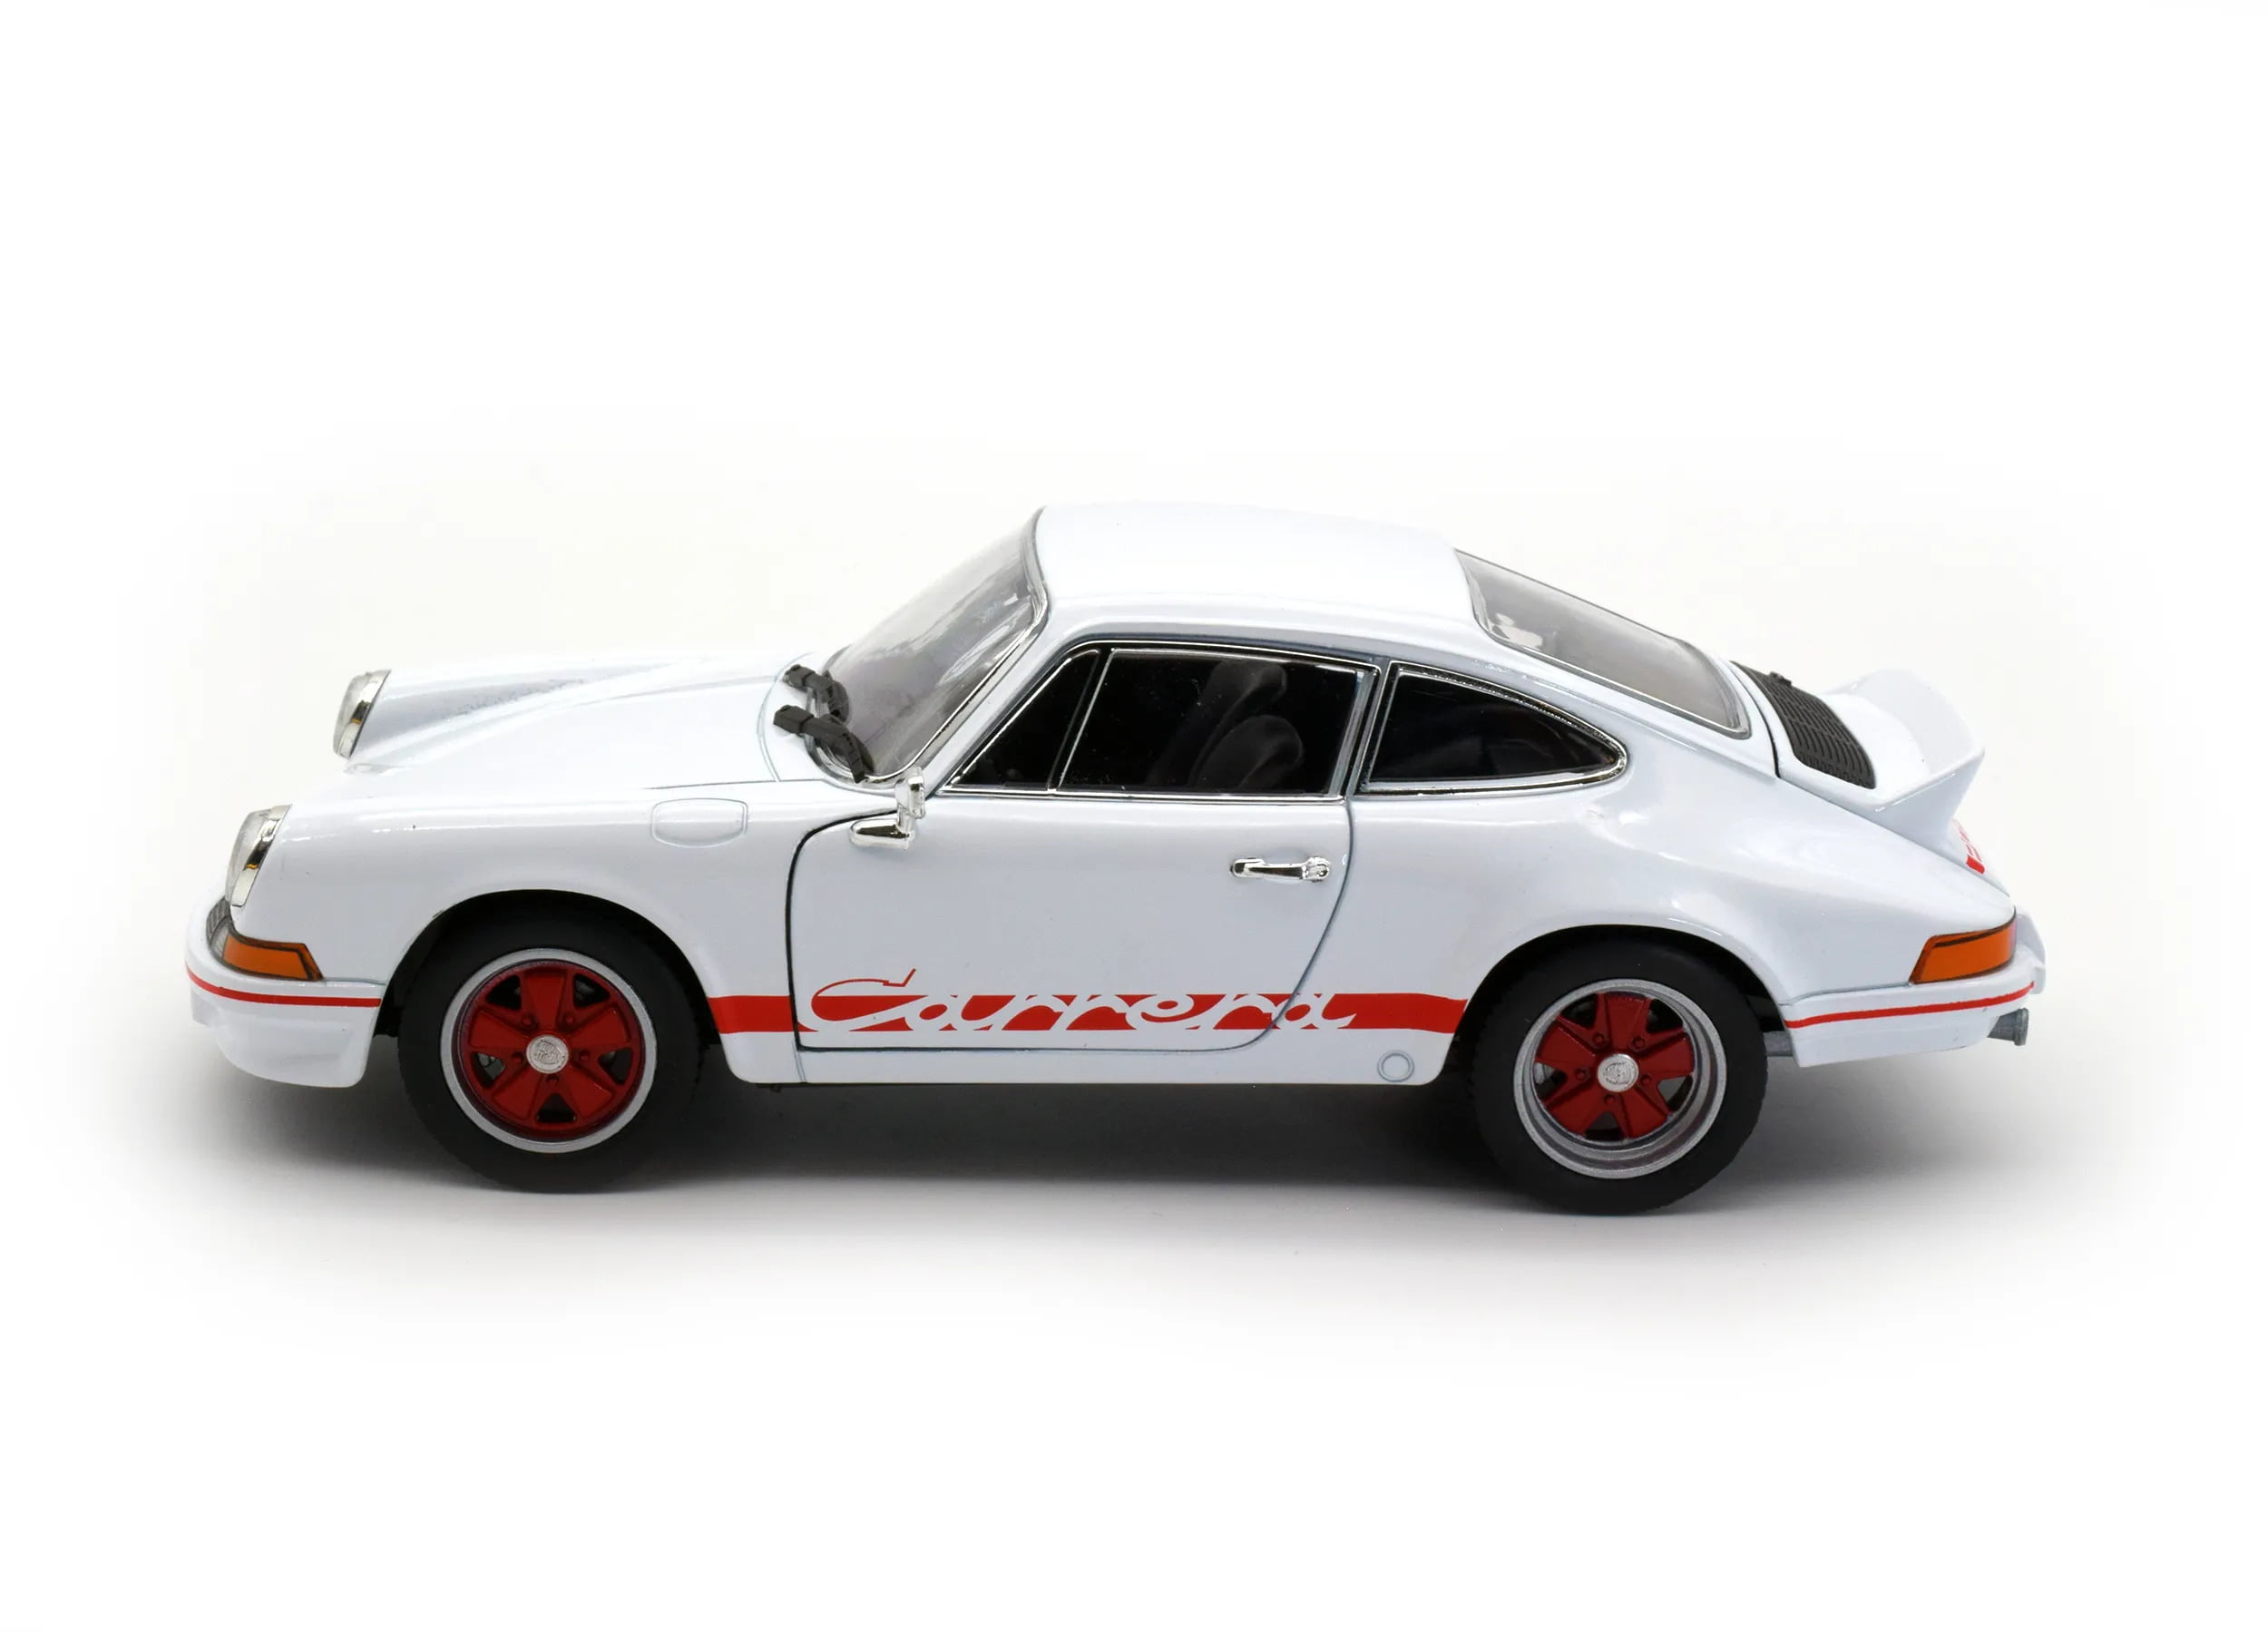 Modellino Porsche 911 Carrera RS 2.7 Prodotto da Welly – LUDOteca e dintorni